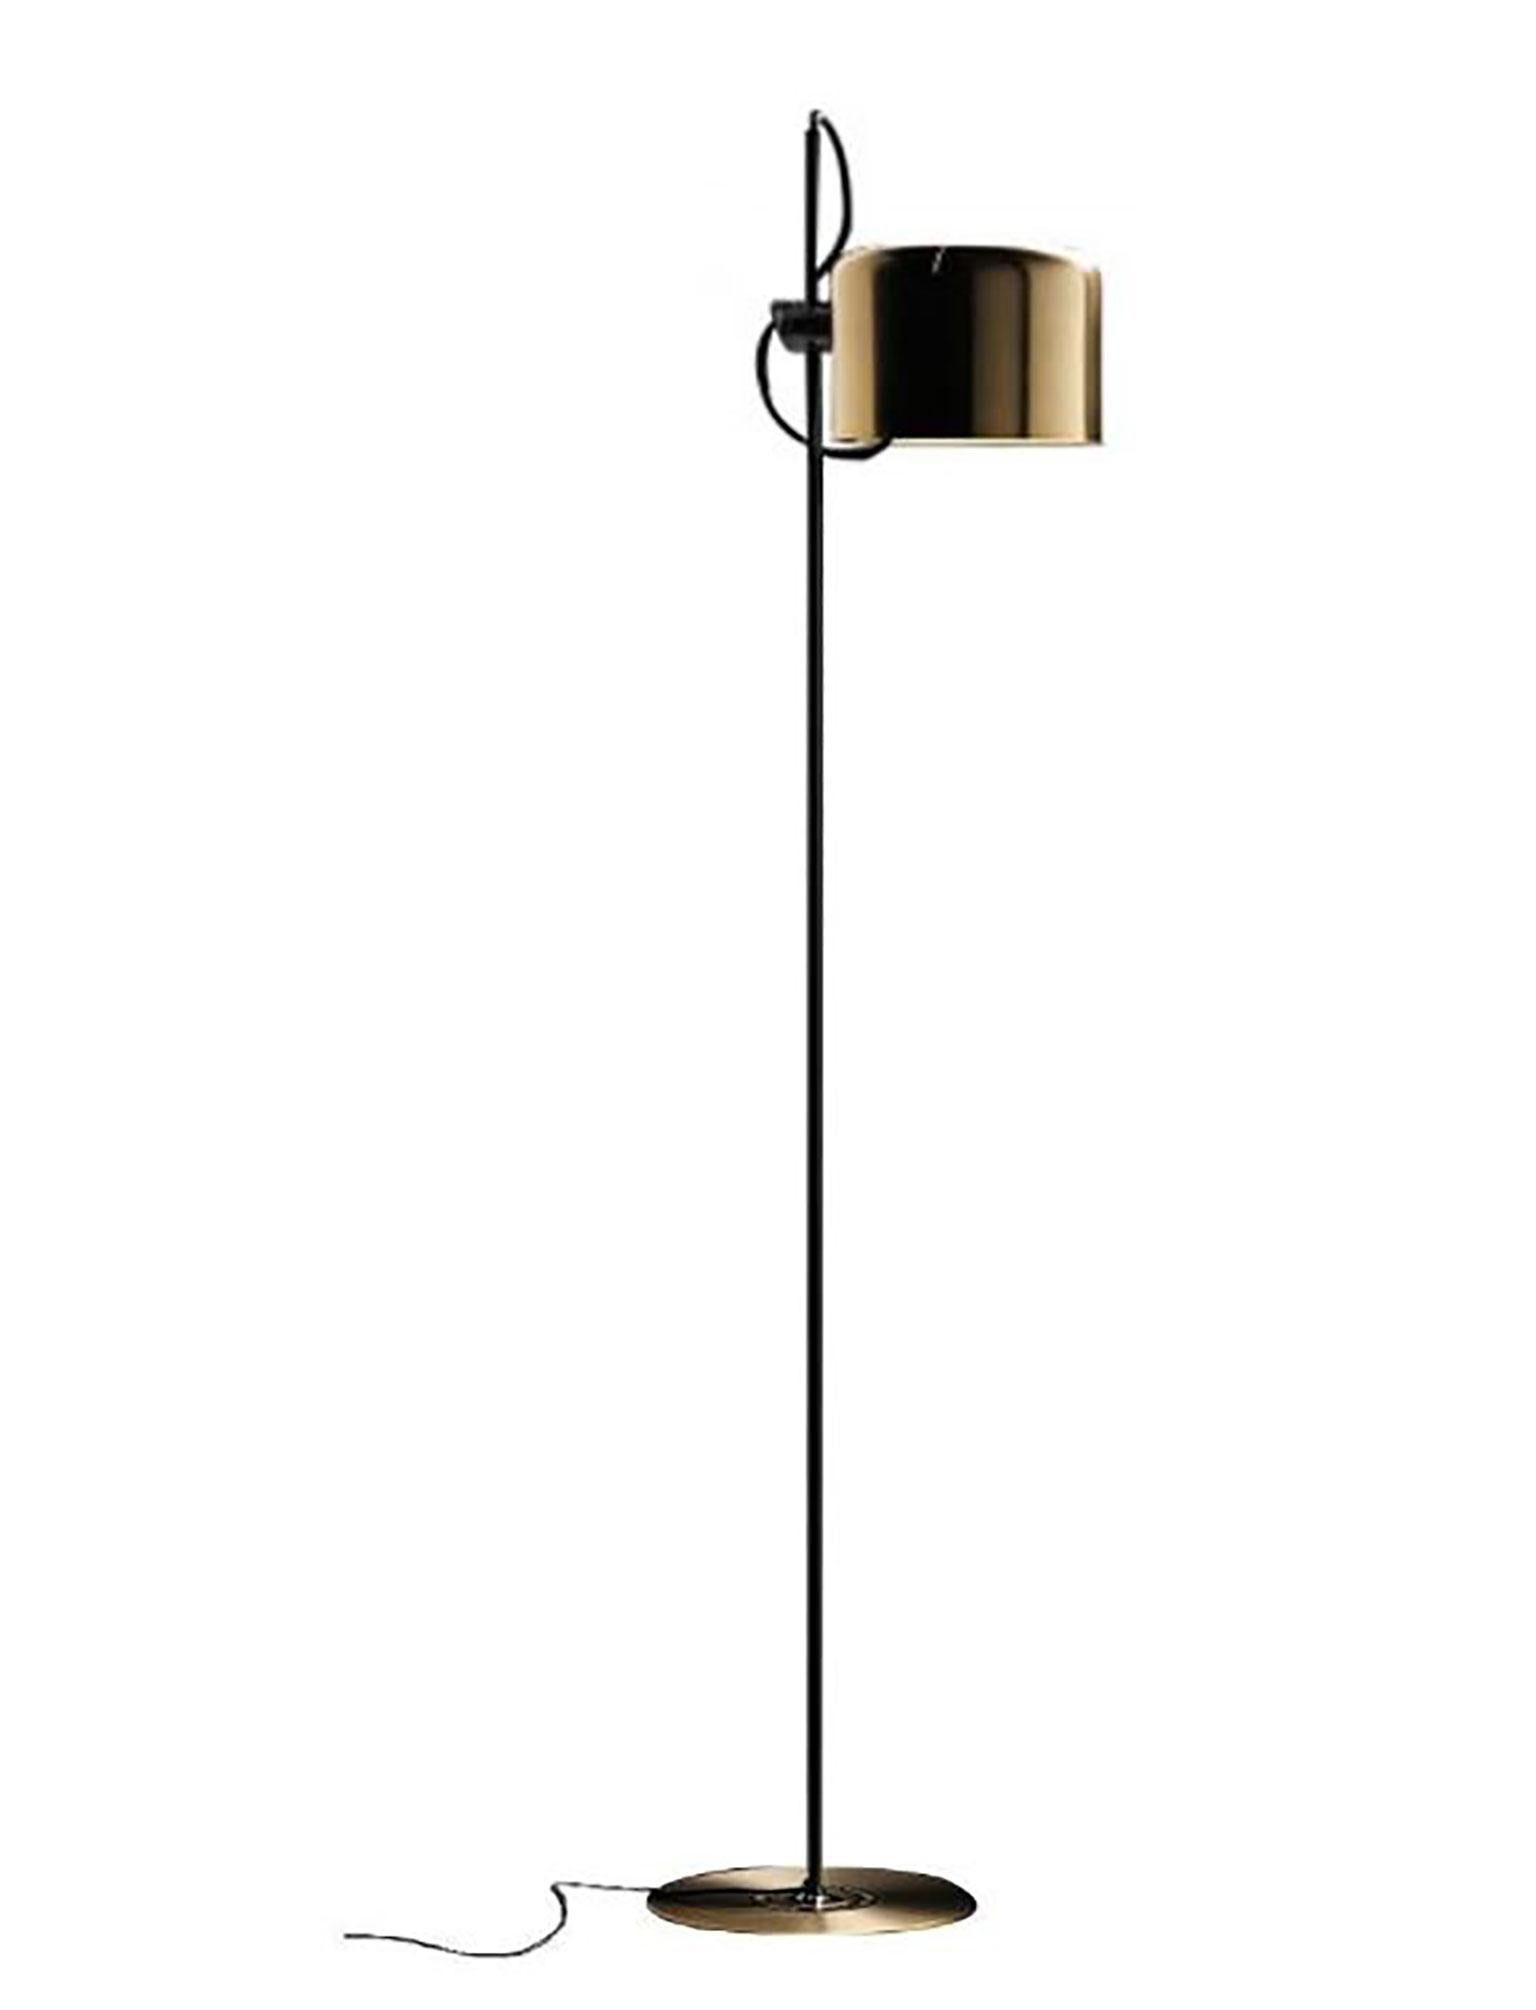 Coupe Stehleuchte (3321), entworfen von Joe Colombo für Oluce. Die Coupe-Lampenserie gilt als eine Variante der Spinnenlampen. Diese Lampe hat einen Sockel aus lackiertem Metall mit einem Reflektor in Form eines Halbkreises aus einbrennlackiertem